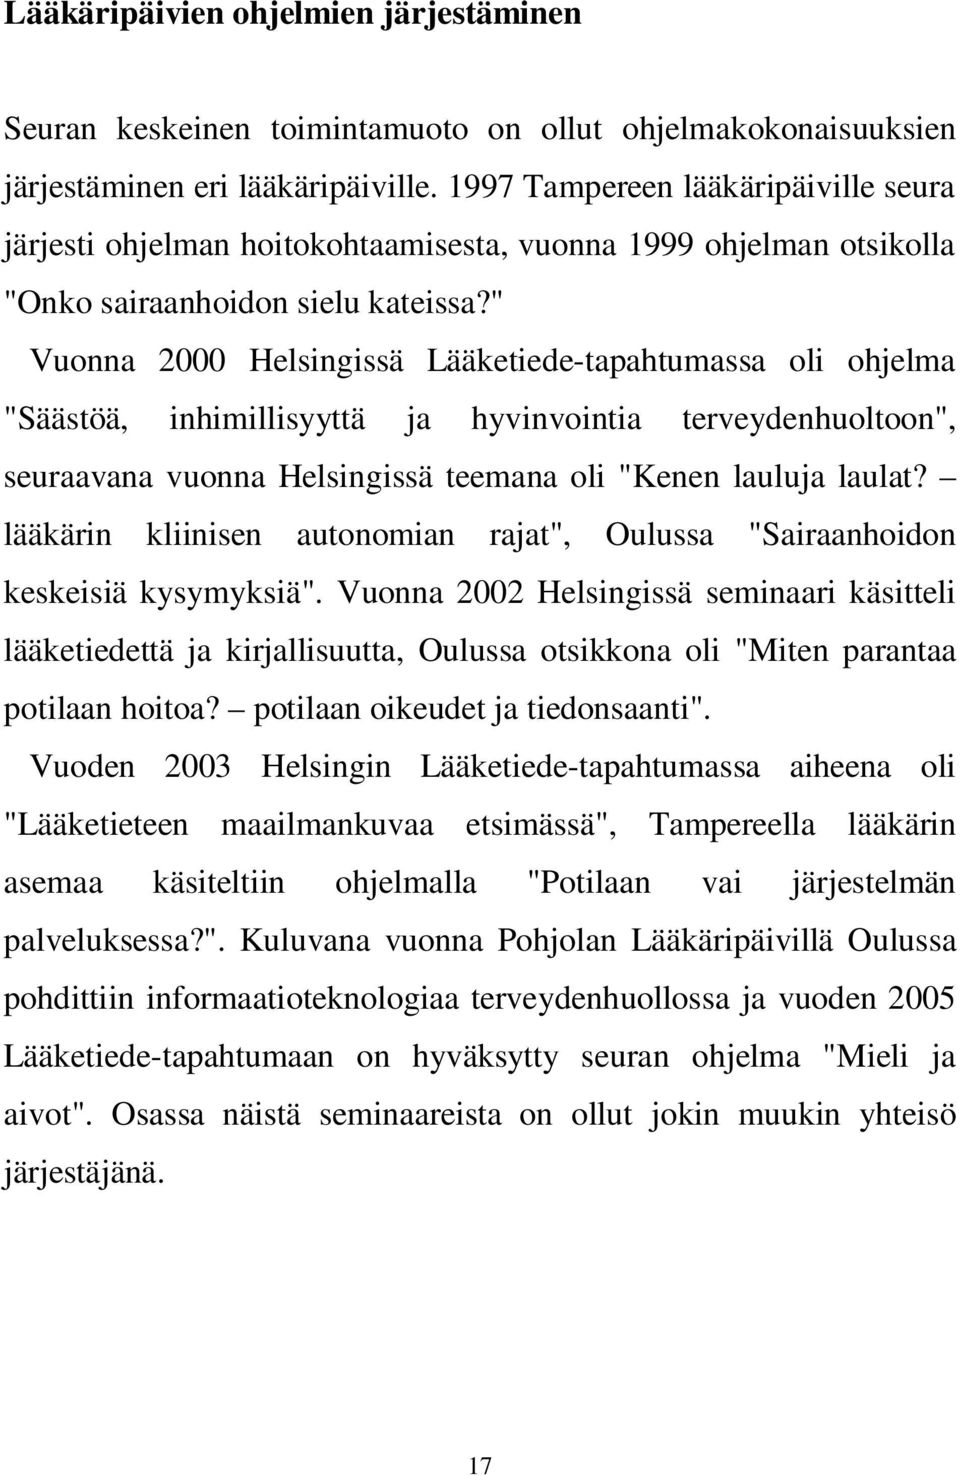 " Vuonna 2000 Helsingissä Lääketiede-tapahtumassa oli ohjelma "Säästöä, inhimillisyyttä ja hyvinvointia terveydenhuoltoon", seuraavana vuonna Helsingissä teemana oli "Kenen lauluja laulat?